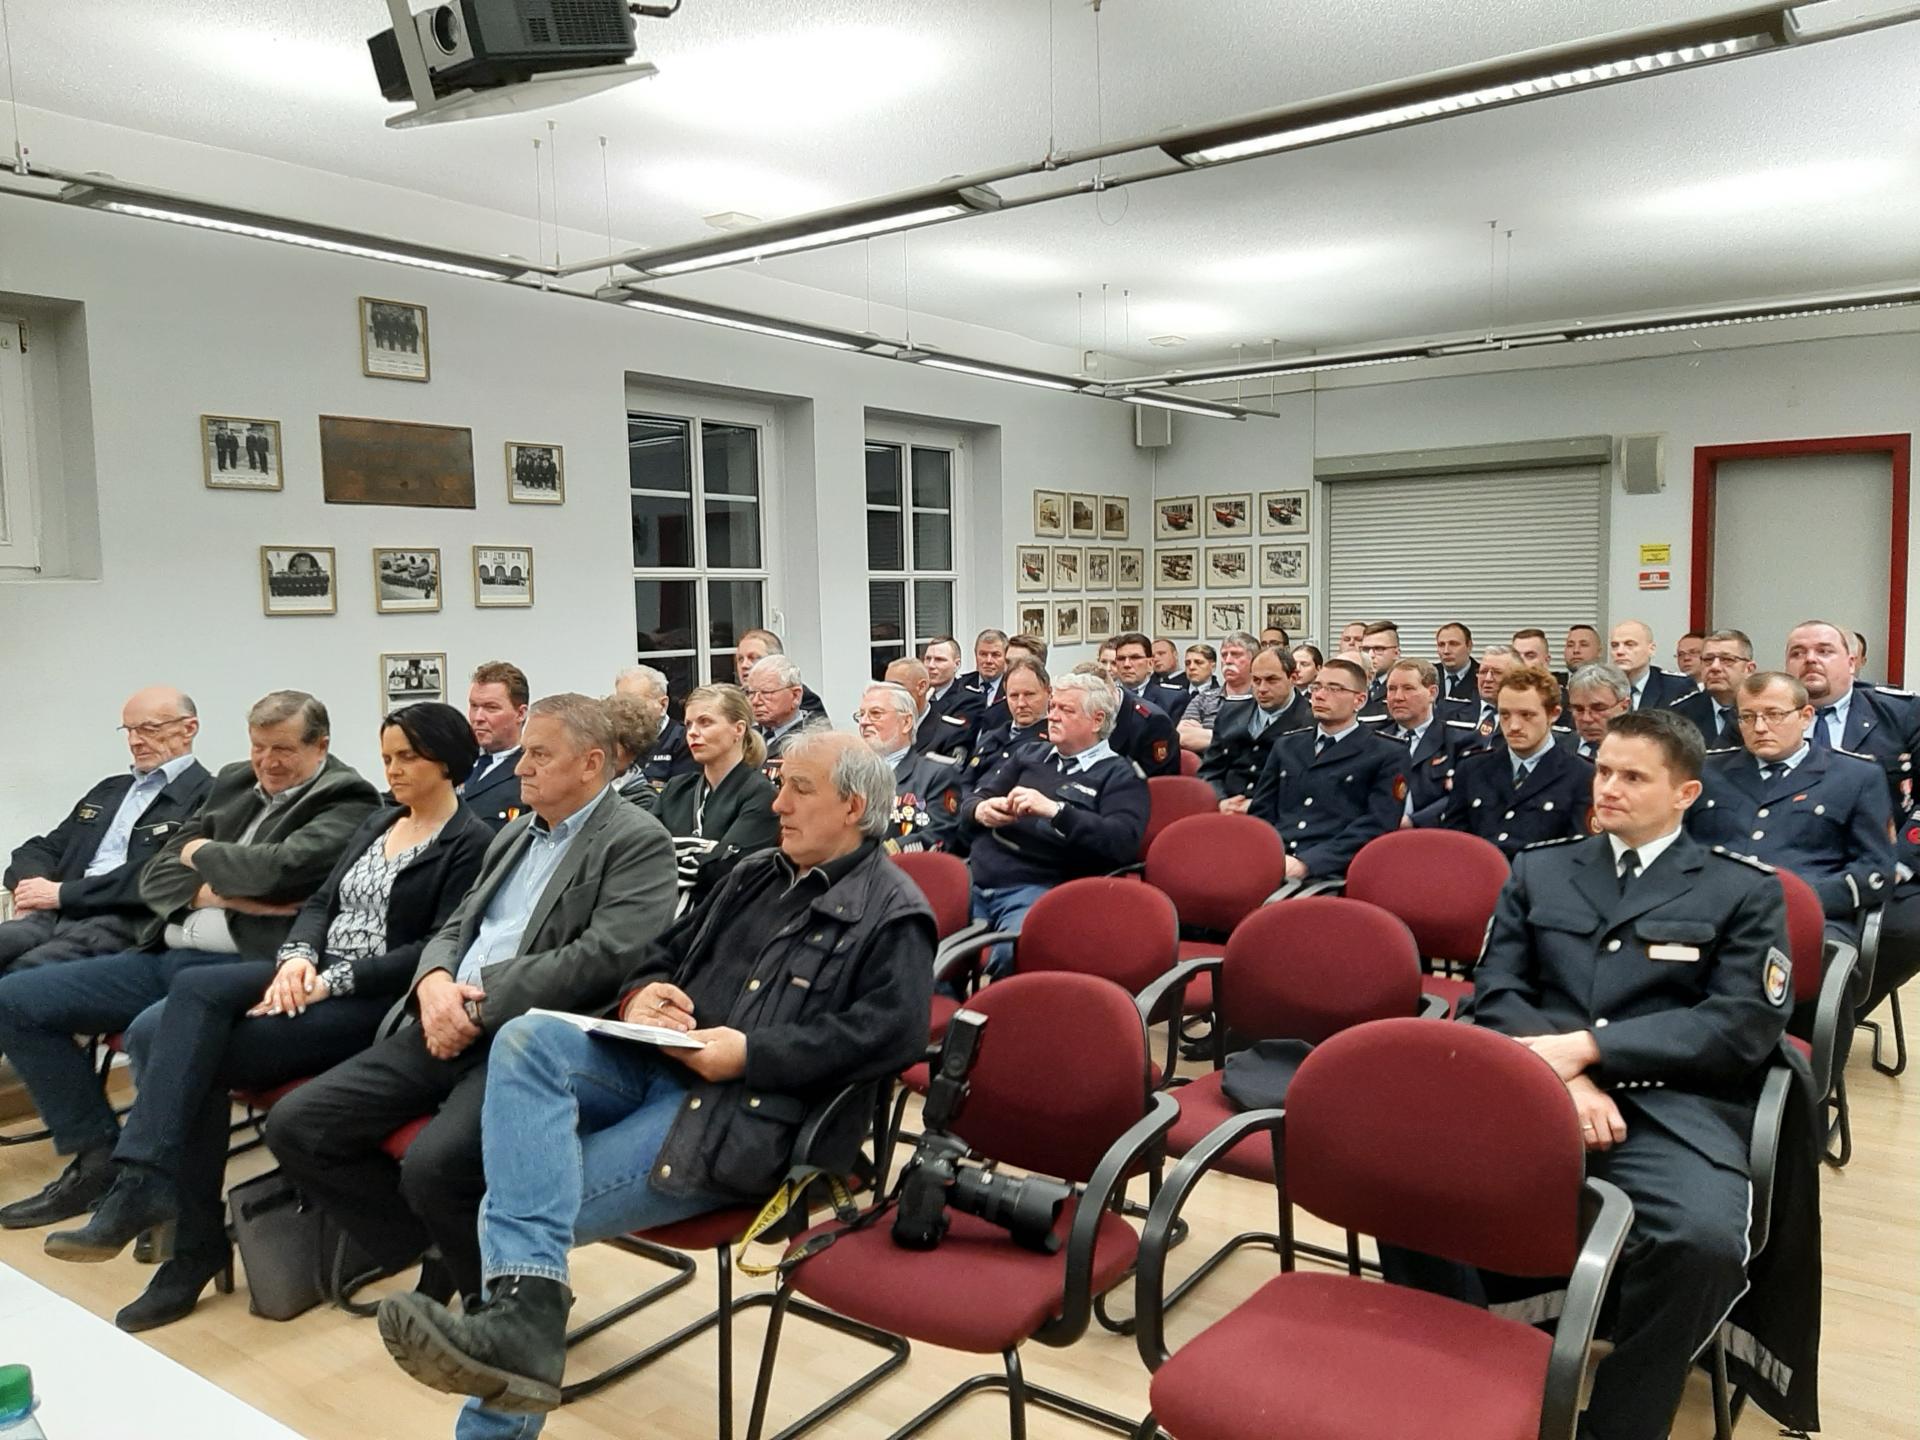 Bild: Viele Gäste und Kameraden anwesend zur Jahreshauptversammlung 2020 der Freiwilligen Feuerwehr der Hansestadt Demmin